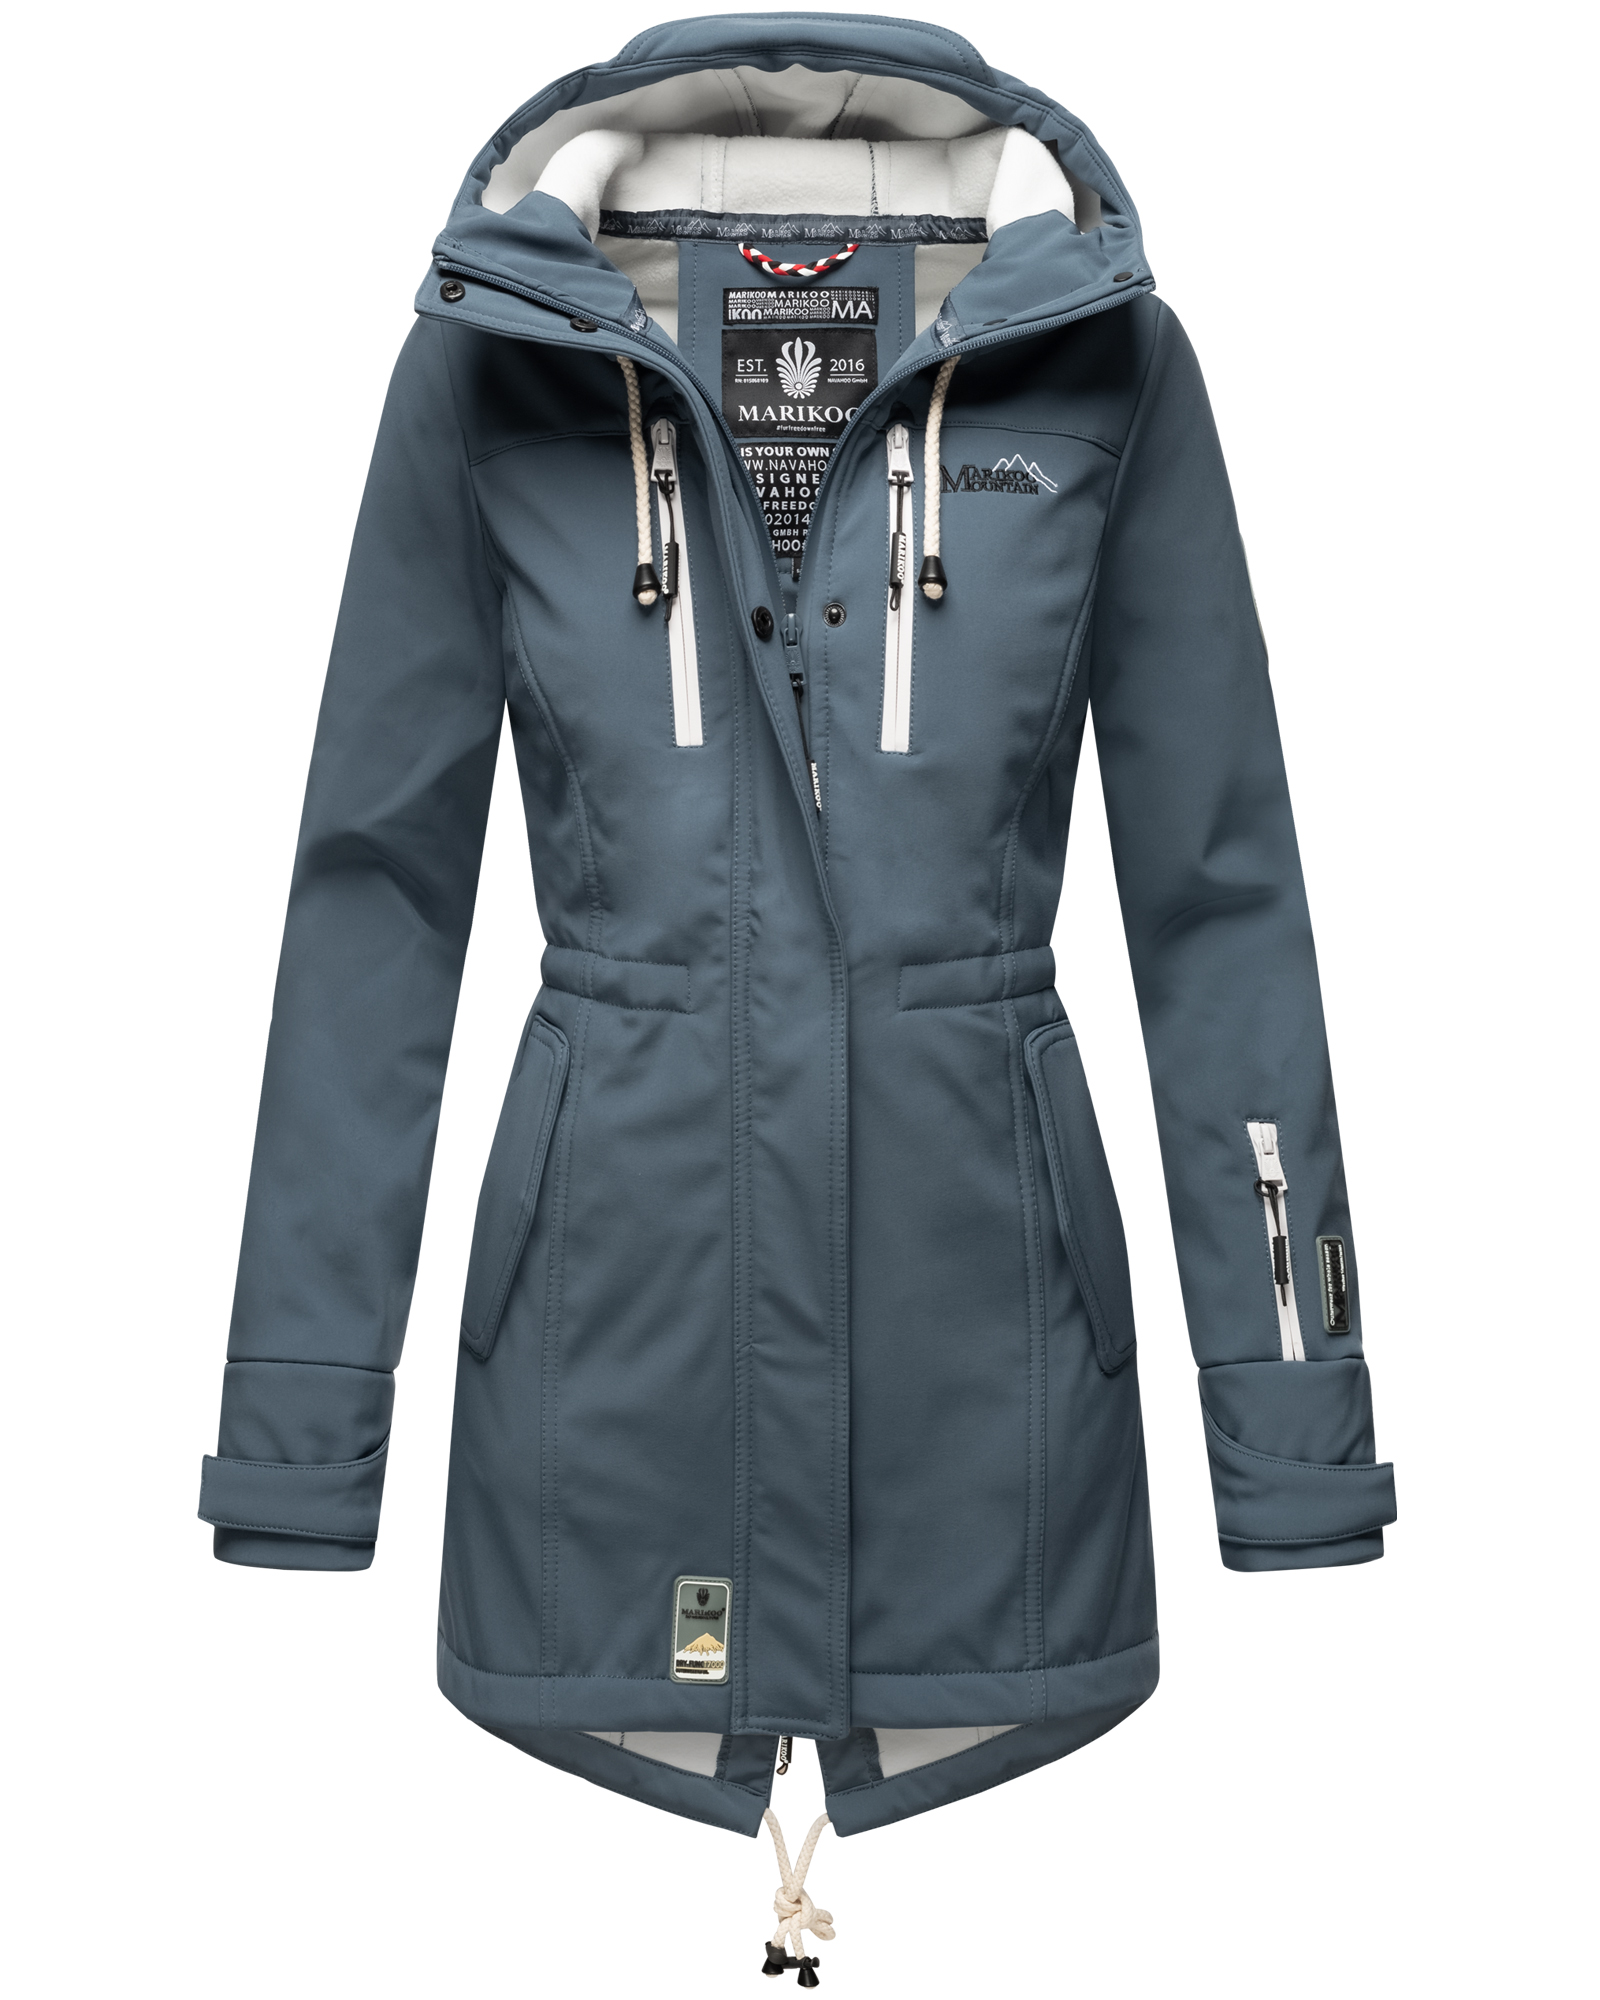 Marikoo Zimtzicke Damen Wasserdichte Softshell Jacke mit Kapuze Outdoor  Regenjacke Regenmantel Dusty Blue Gr. 36 - S